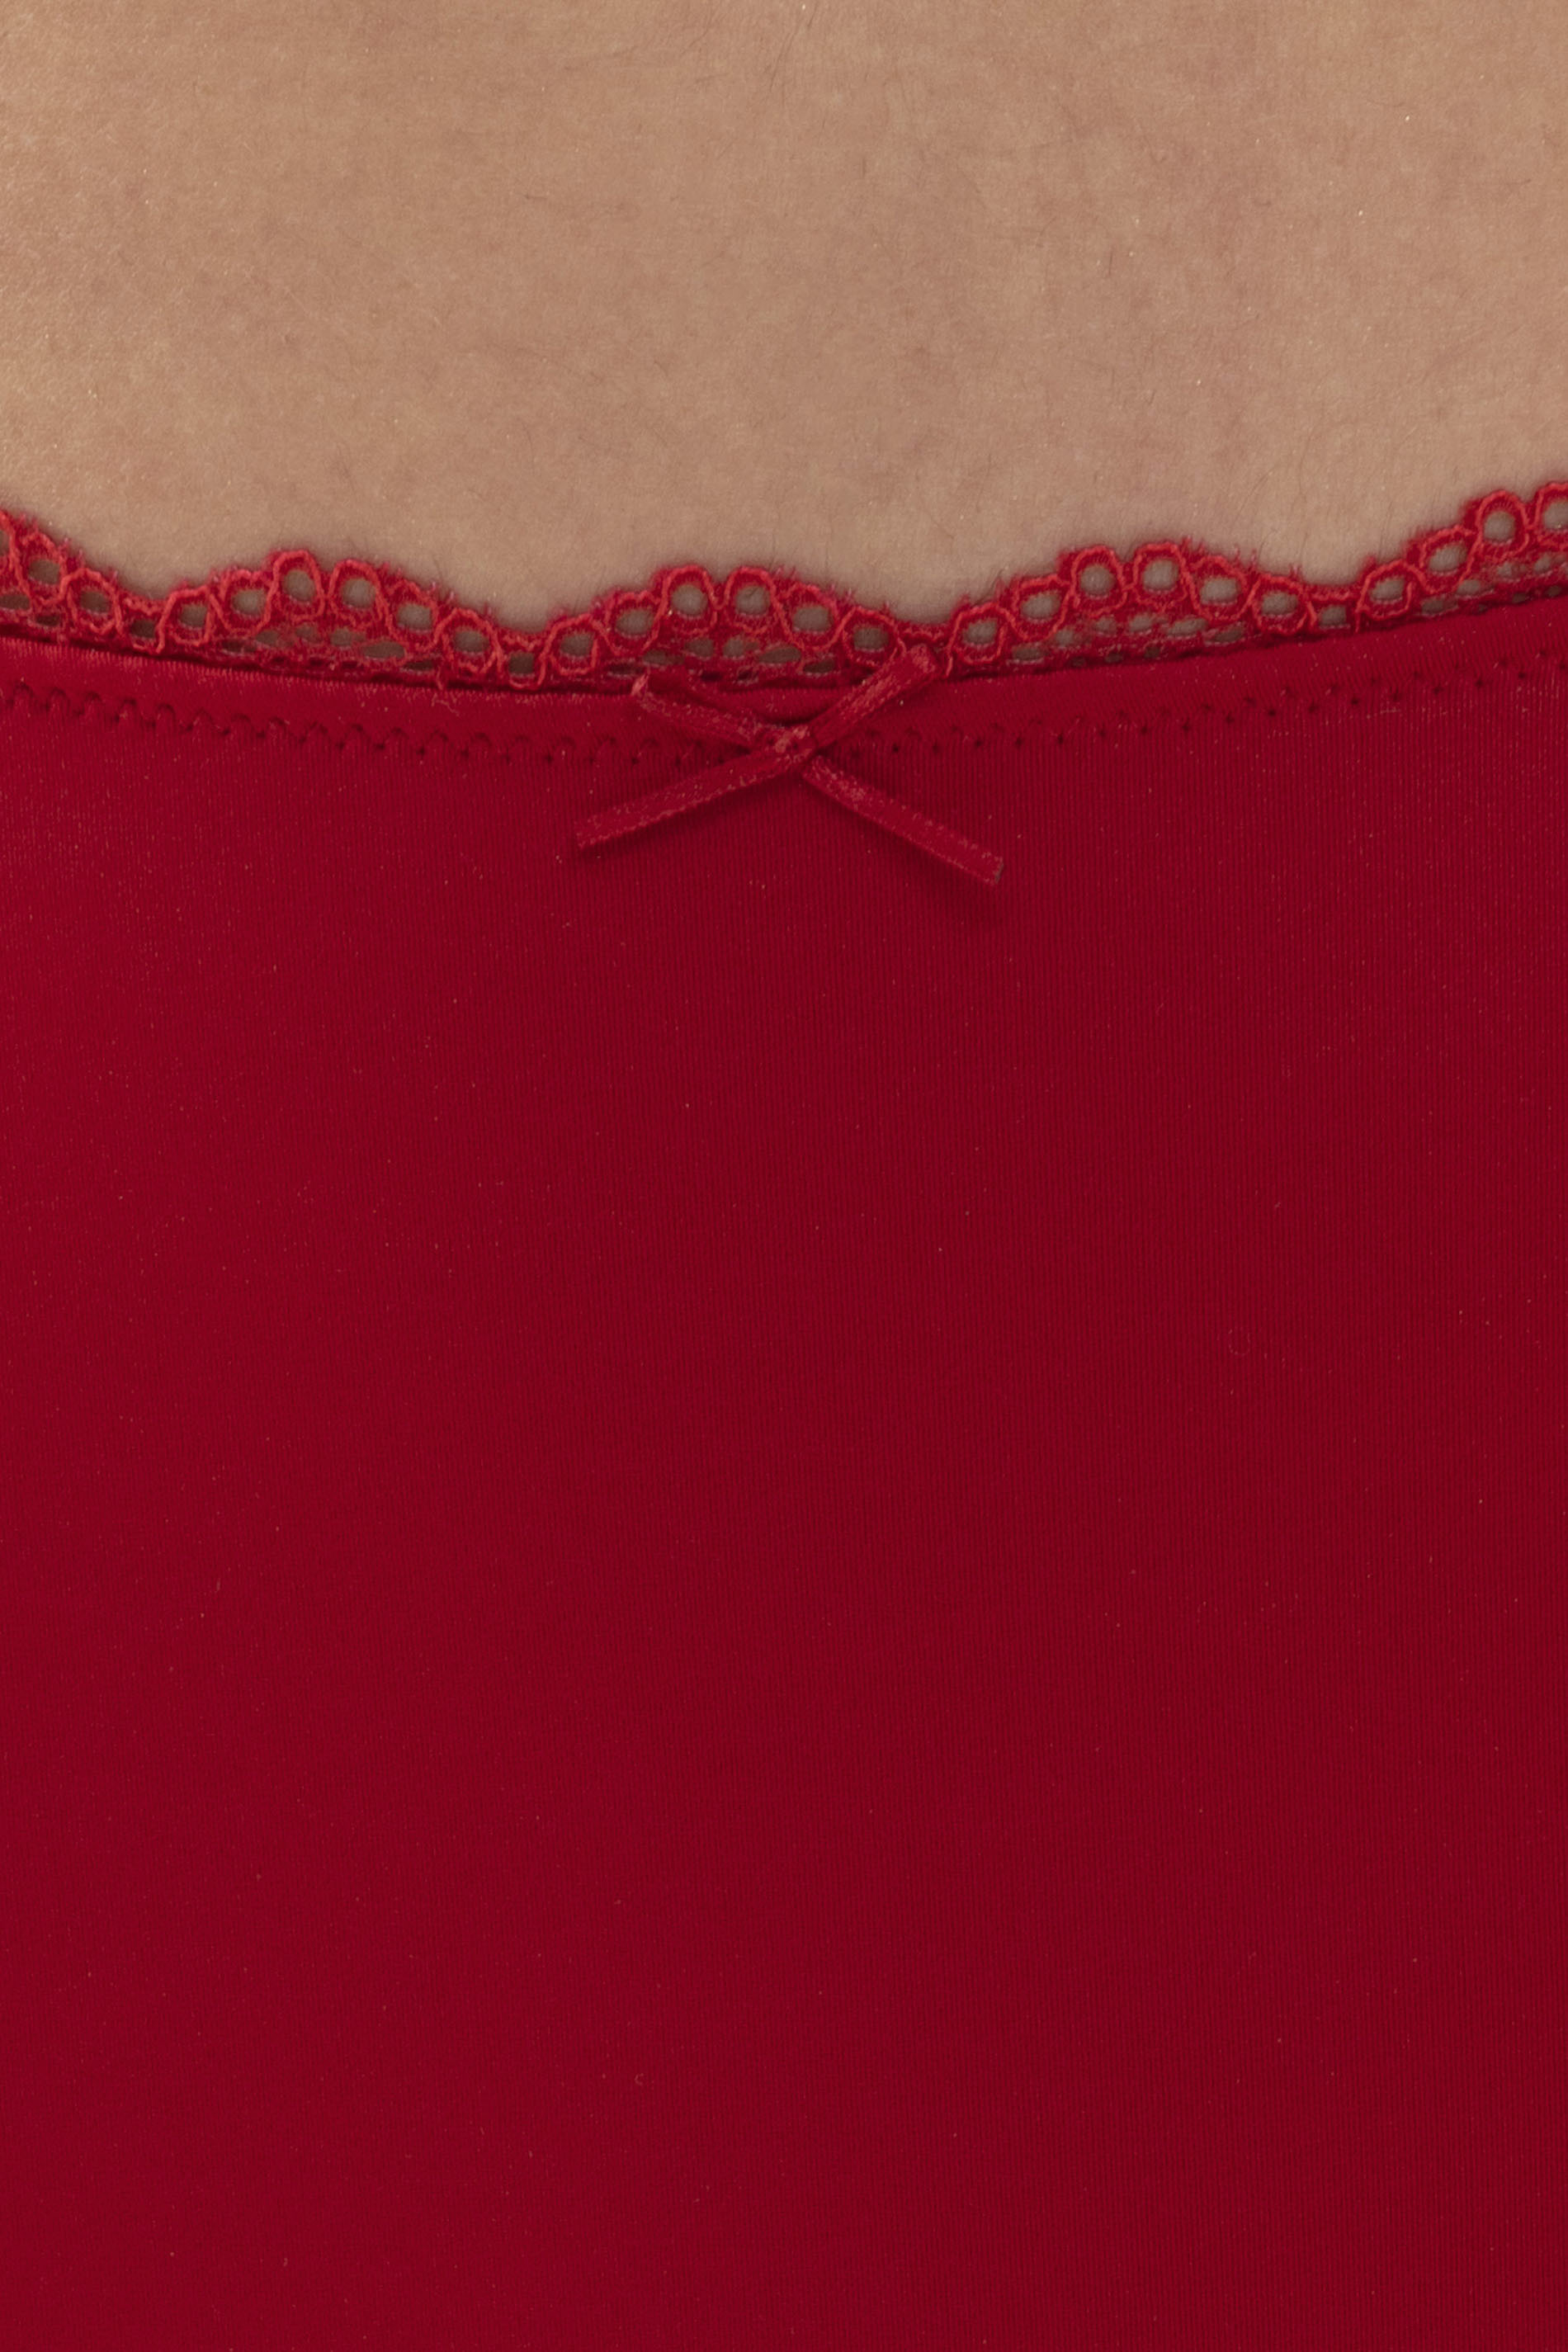 Taillen-Slip Rubin Serie Amorous Detailansicht 01 | mey®